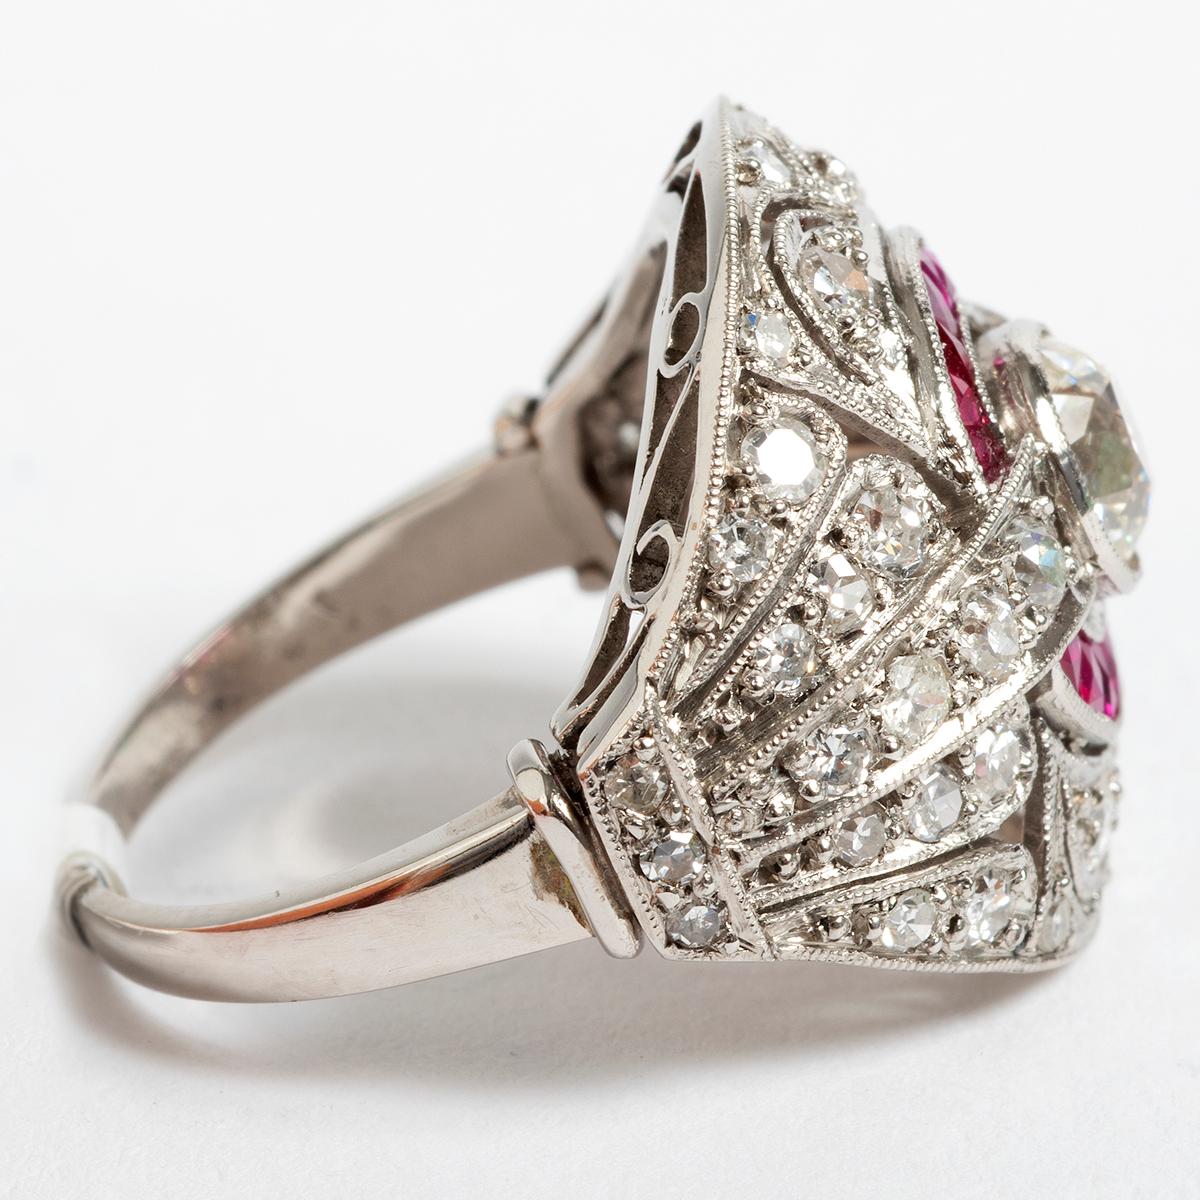 Cette bague en platine de style art déco des années 1900, ornée de diamants et de rubis, est disponible en taille UK L 1/2 / US 6. Une pièce vibrante et magnifiquement conçue.